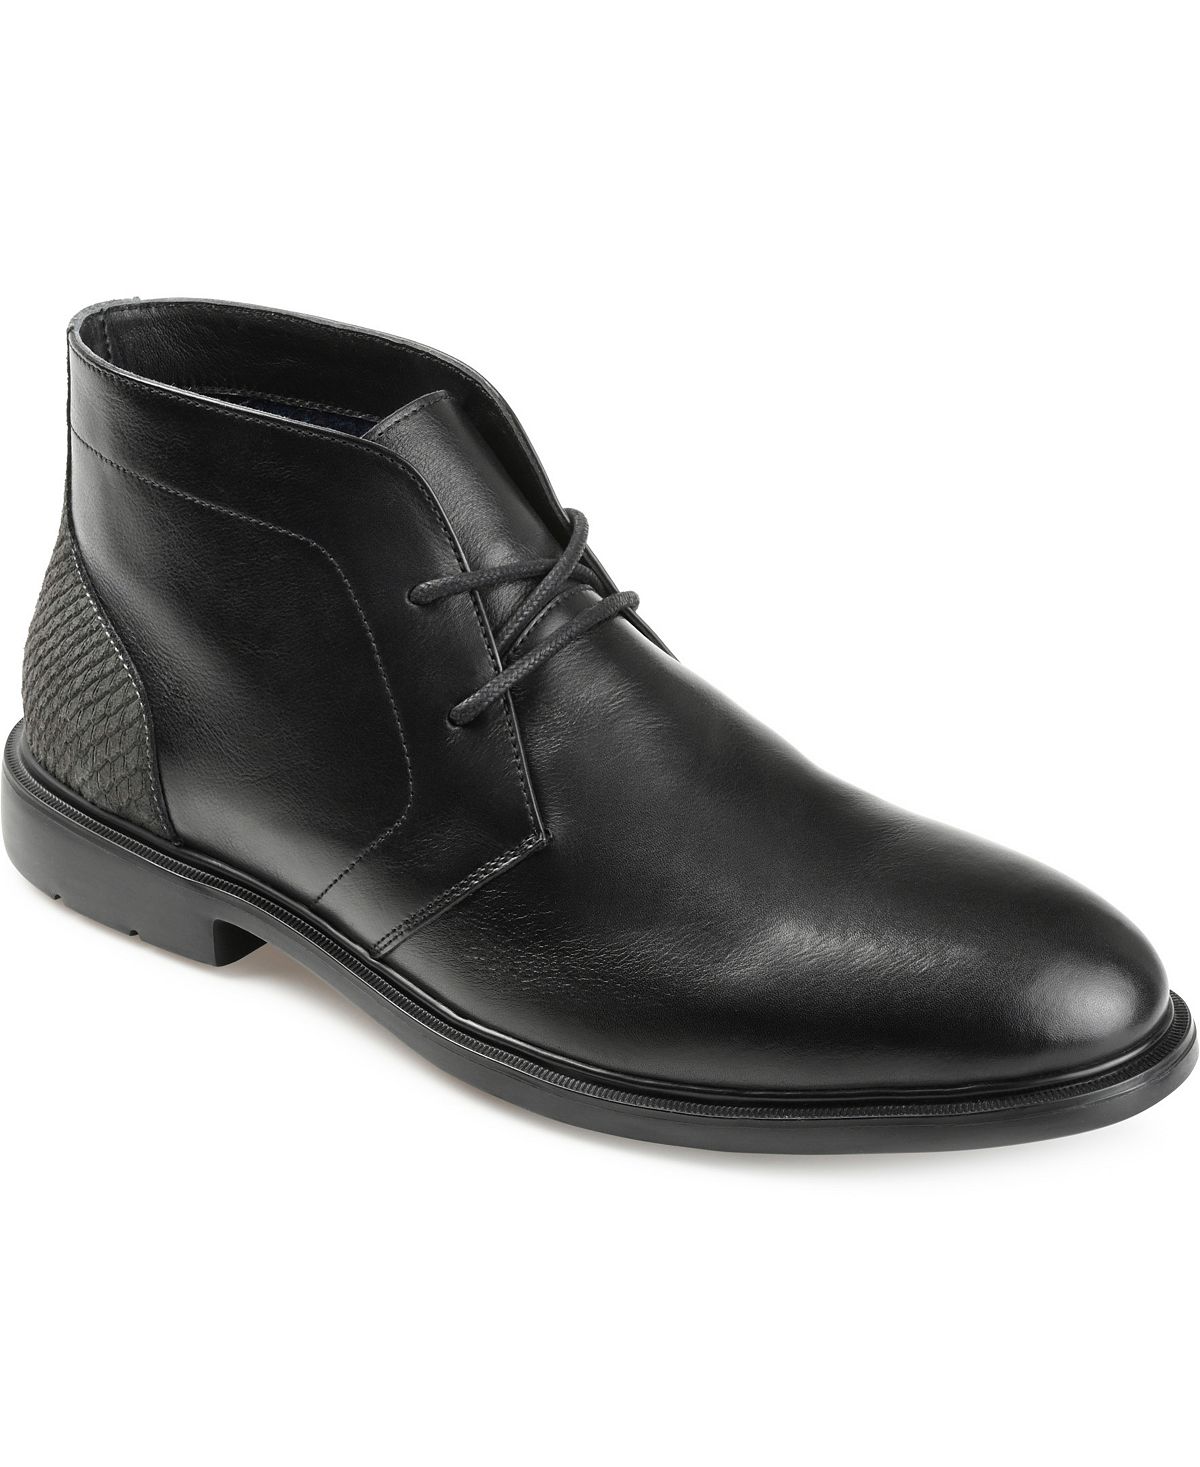 Мужские ботинки чукка с простым носком Aldridge Thomas & Vine